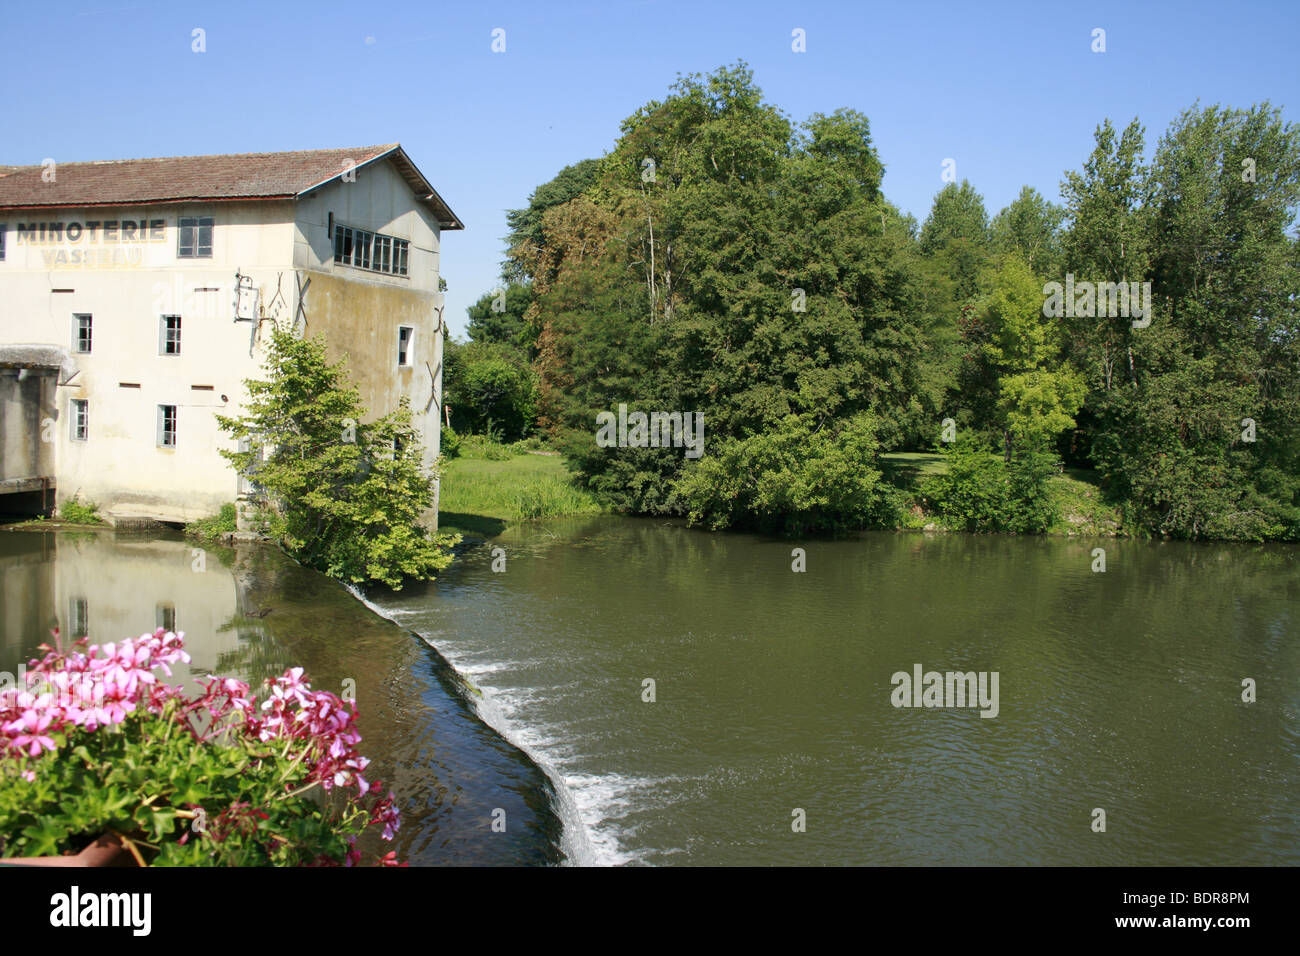 The picturesque village of Allemans du Dropt, France Stock Photo